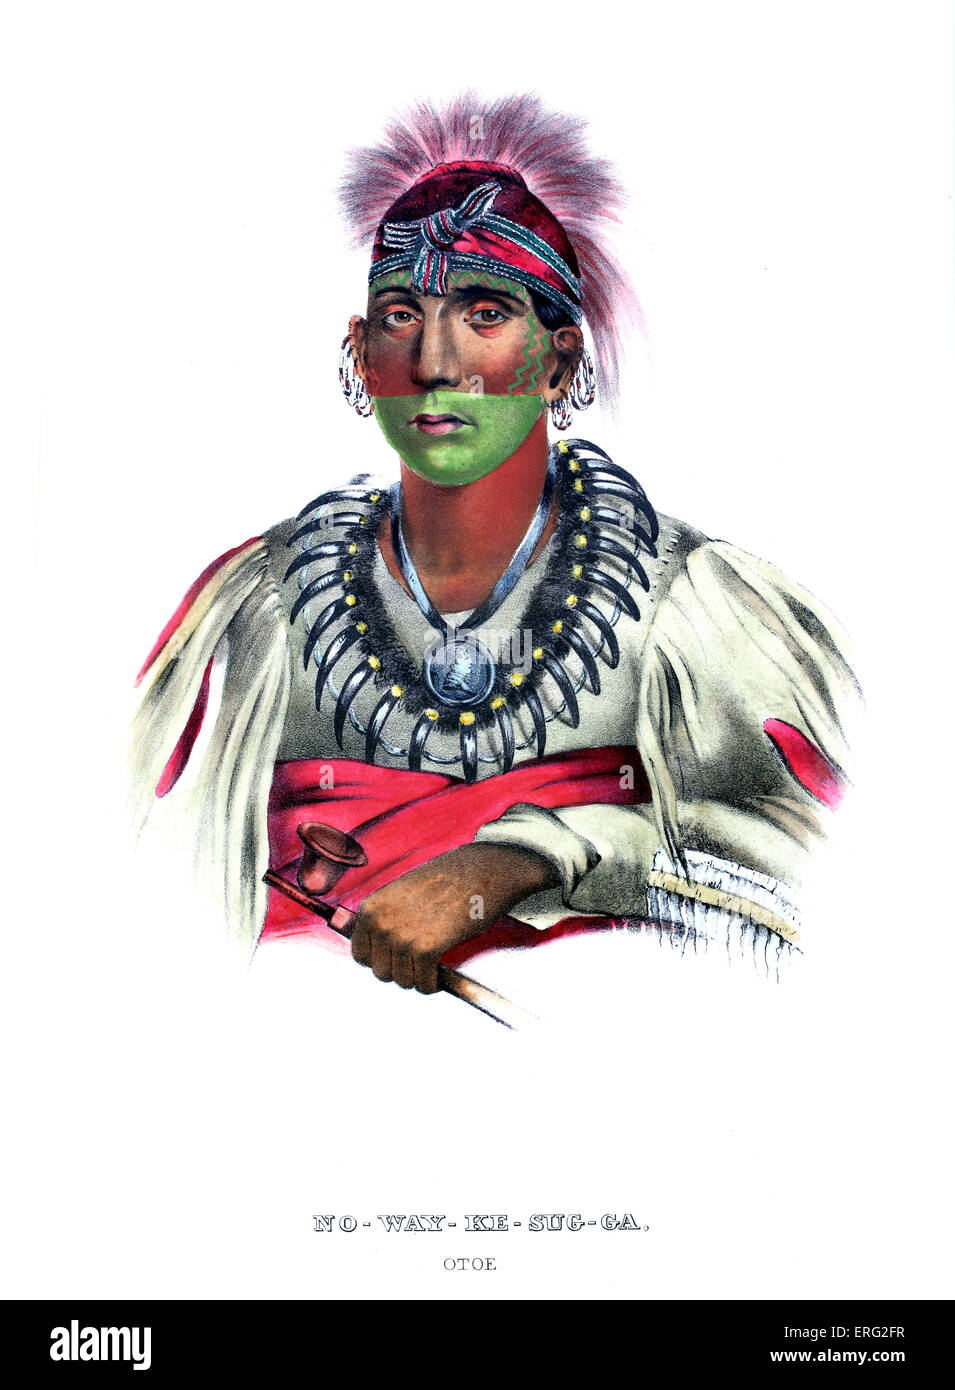 Nowaykesugga, nativi americani della Oto tribù con tubo, medaglione e bear claw collana. Ritratto c. 1840 dopo la verniciatura mediante Foto Stock